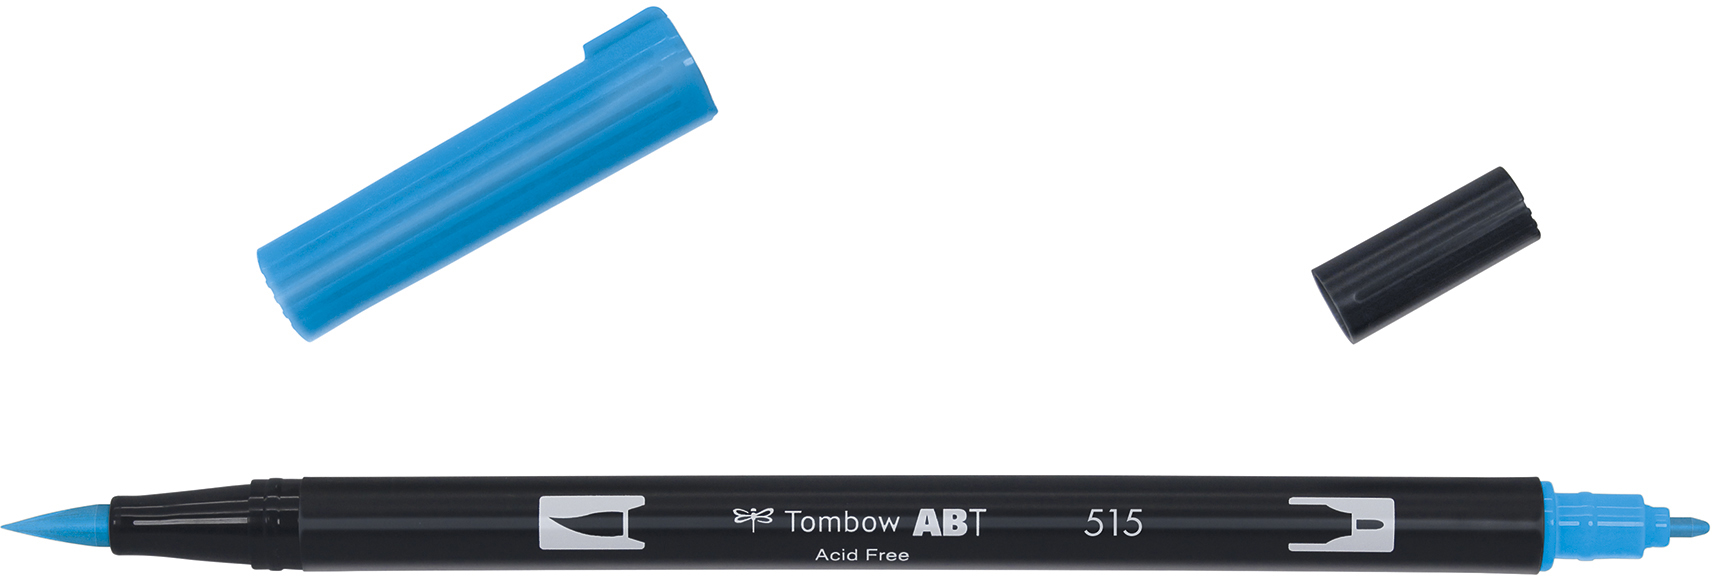 TOMBOW Dual Brush Pen ABT 515 bleu claire bleu claire